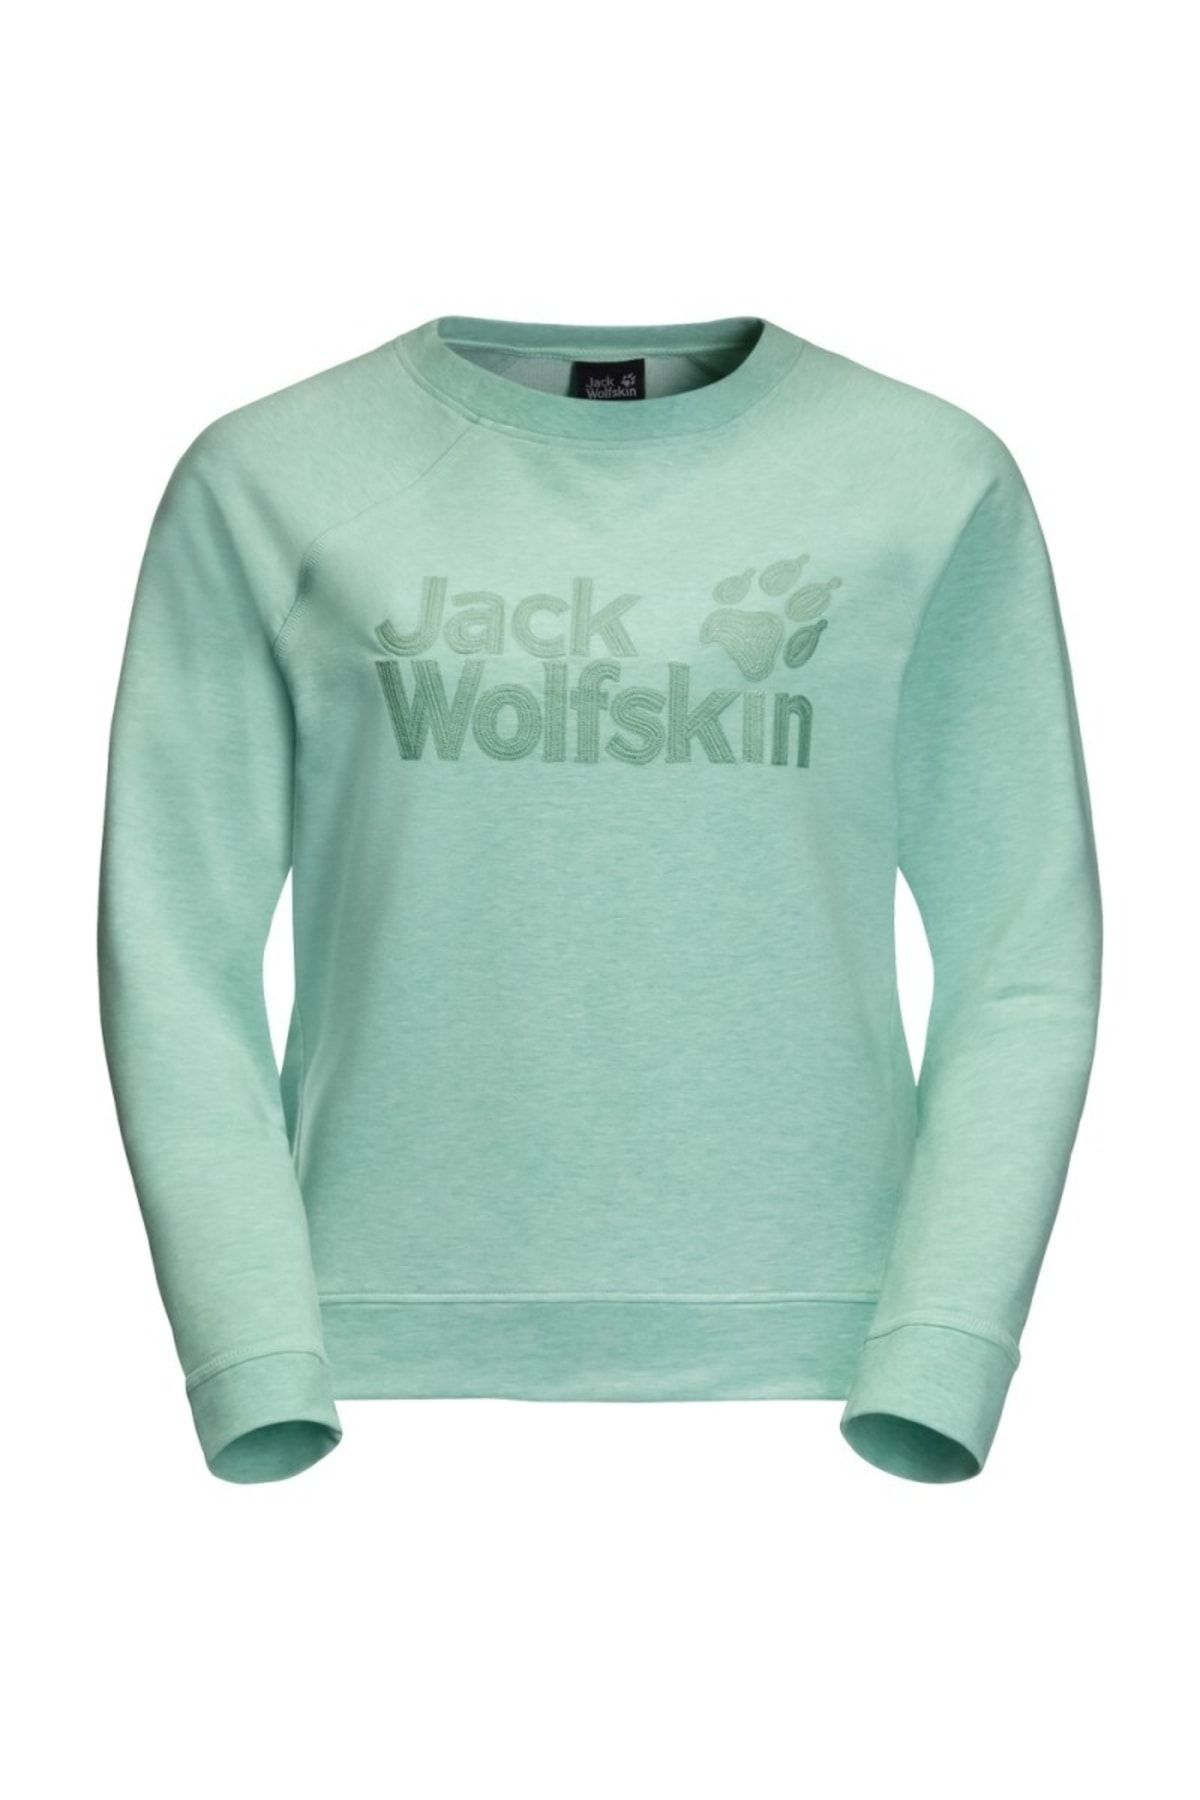 Jack Wolfskin New Logo Kadın Sweatshirt W